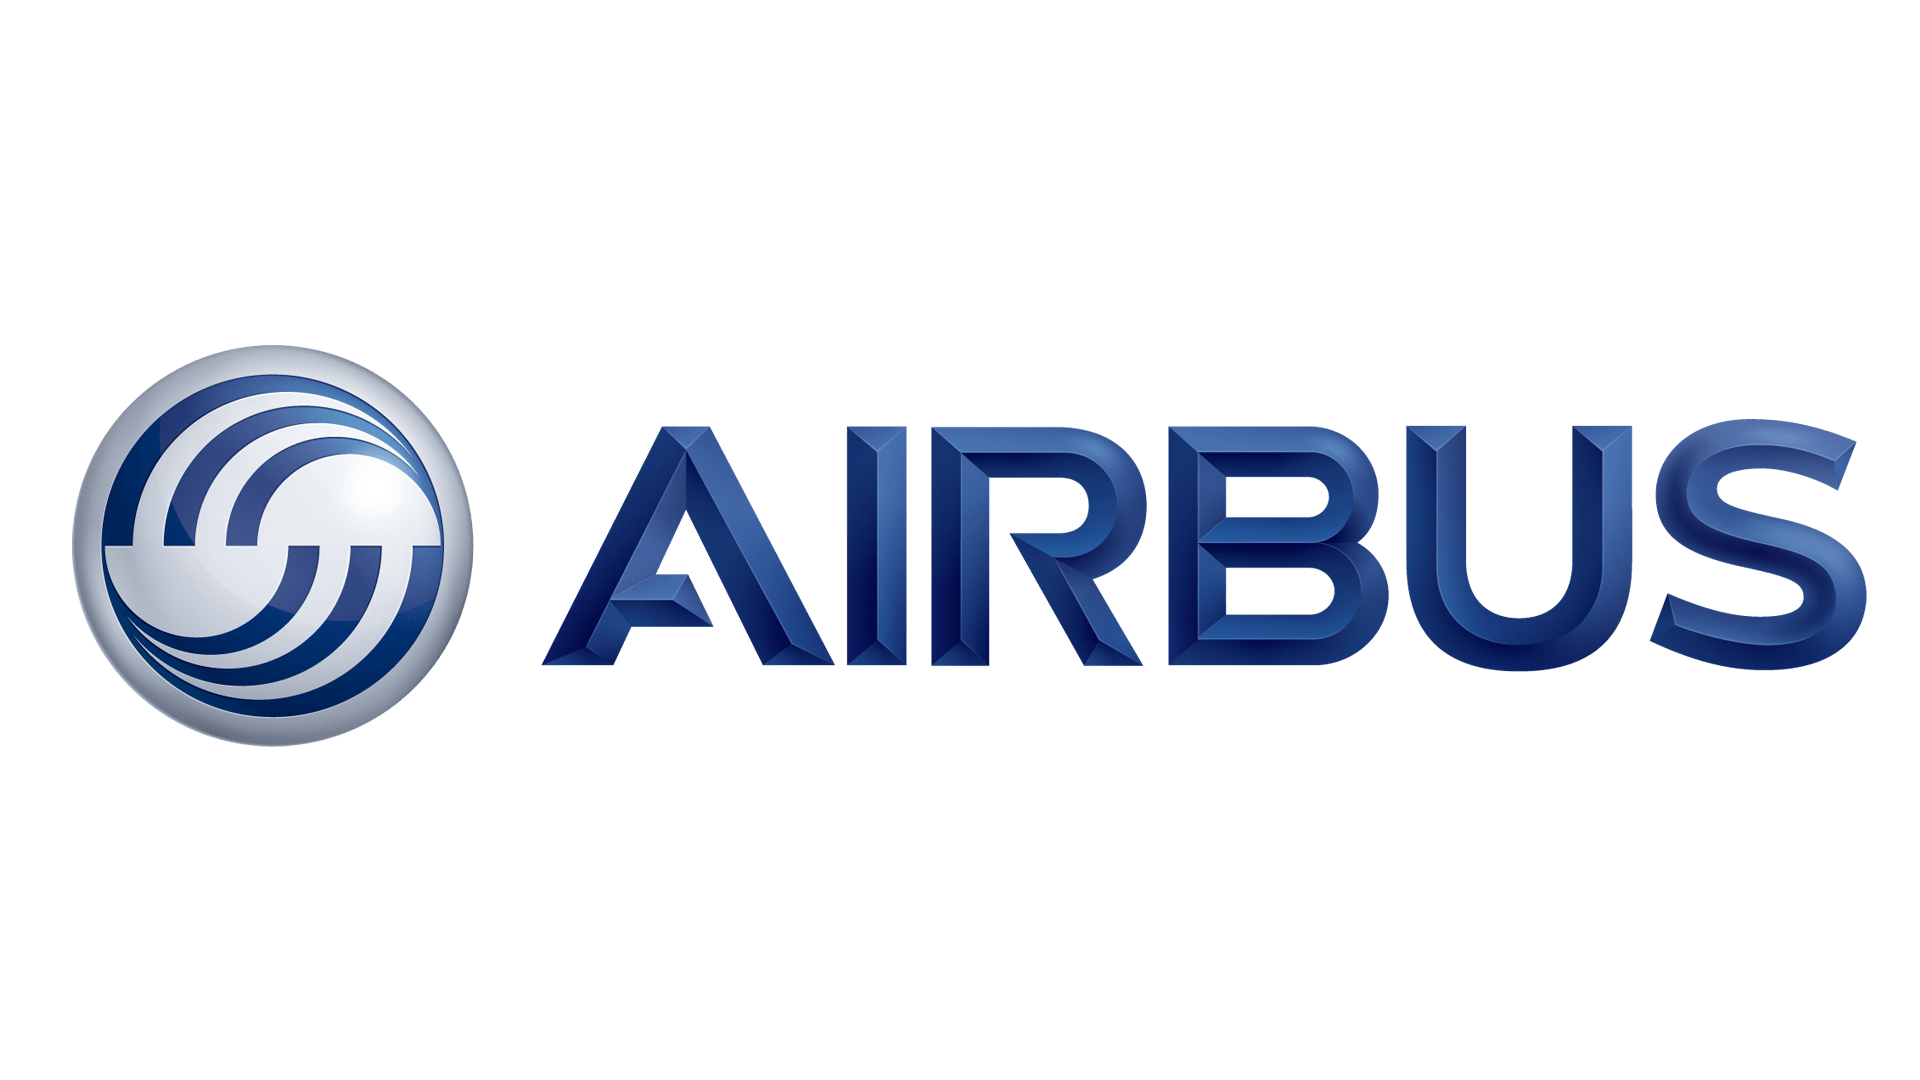 I-Airbus logo histoire et signification, evolution, symbole Airbus